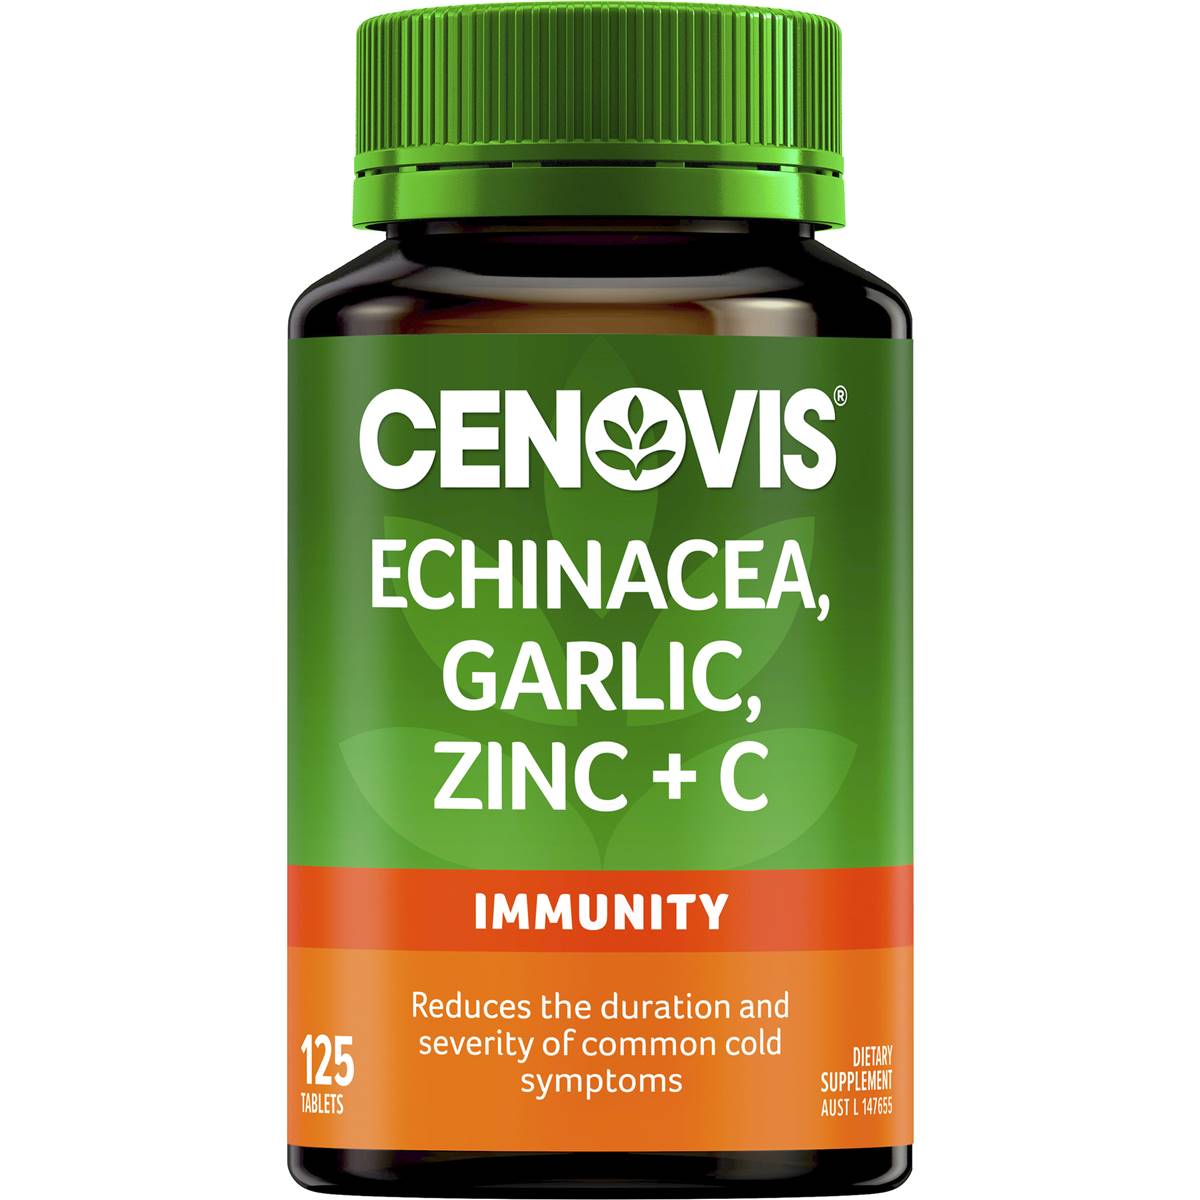 Calories in Cenovis Echinacea Garlic Zinc & Vitamin C For Immune Support